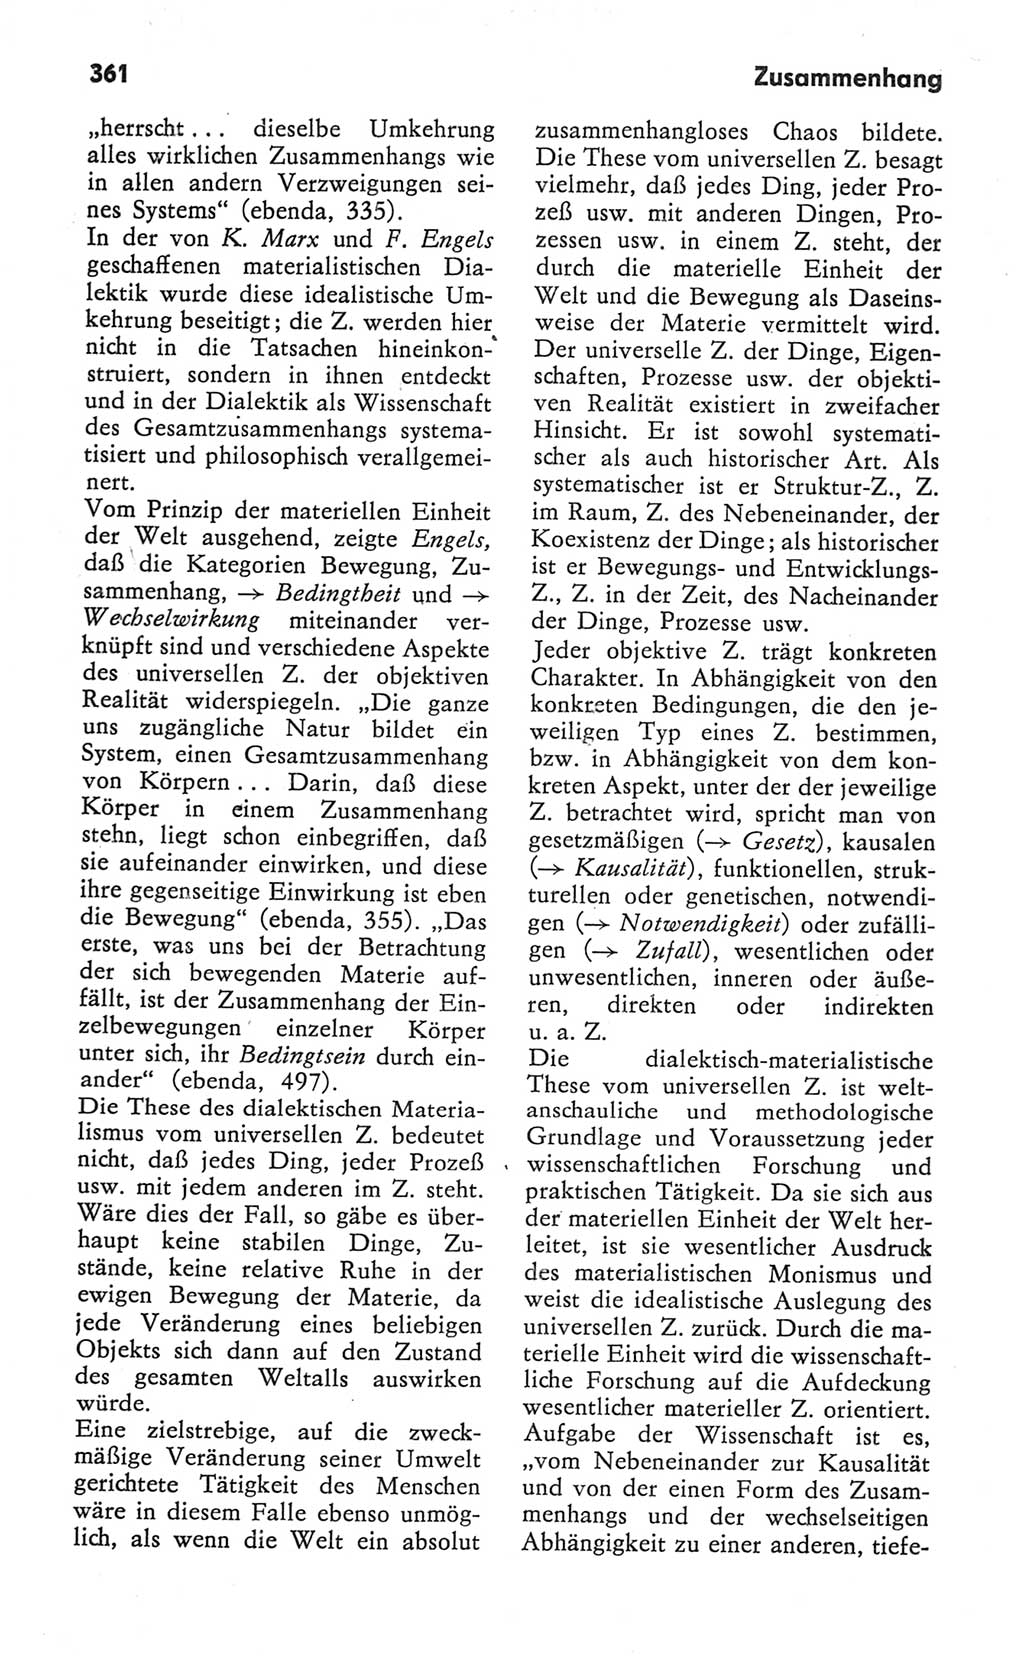 Kleines Wörterbuch der marxistisch-leninistischen Philosophie [Deutsche Demokratische Republik (DDR)] 1982, Seite 361 (Kl. Wb. ML Phil. DDR 1982, S. 361)